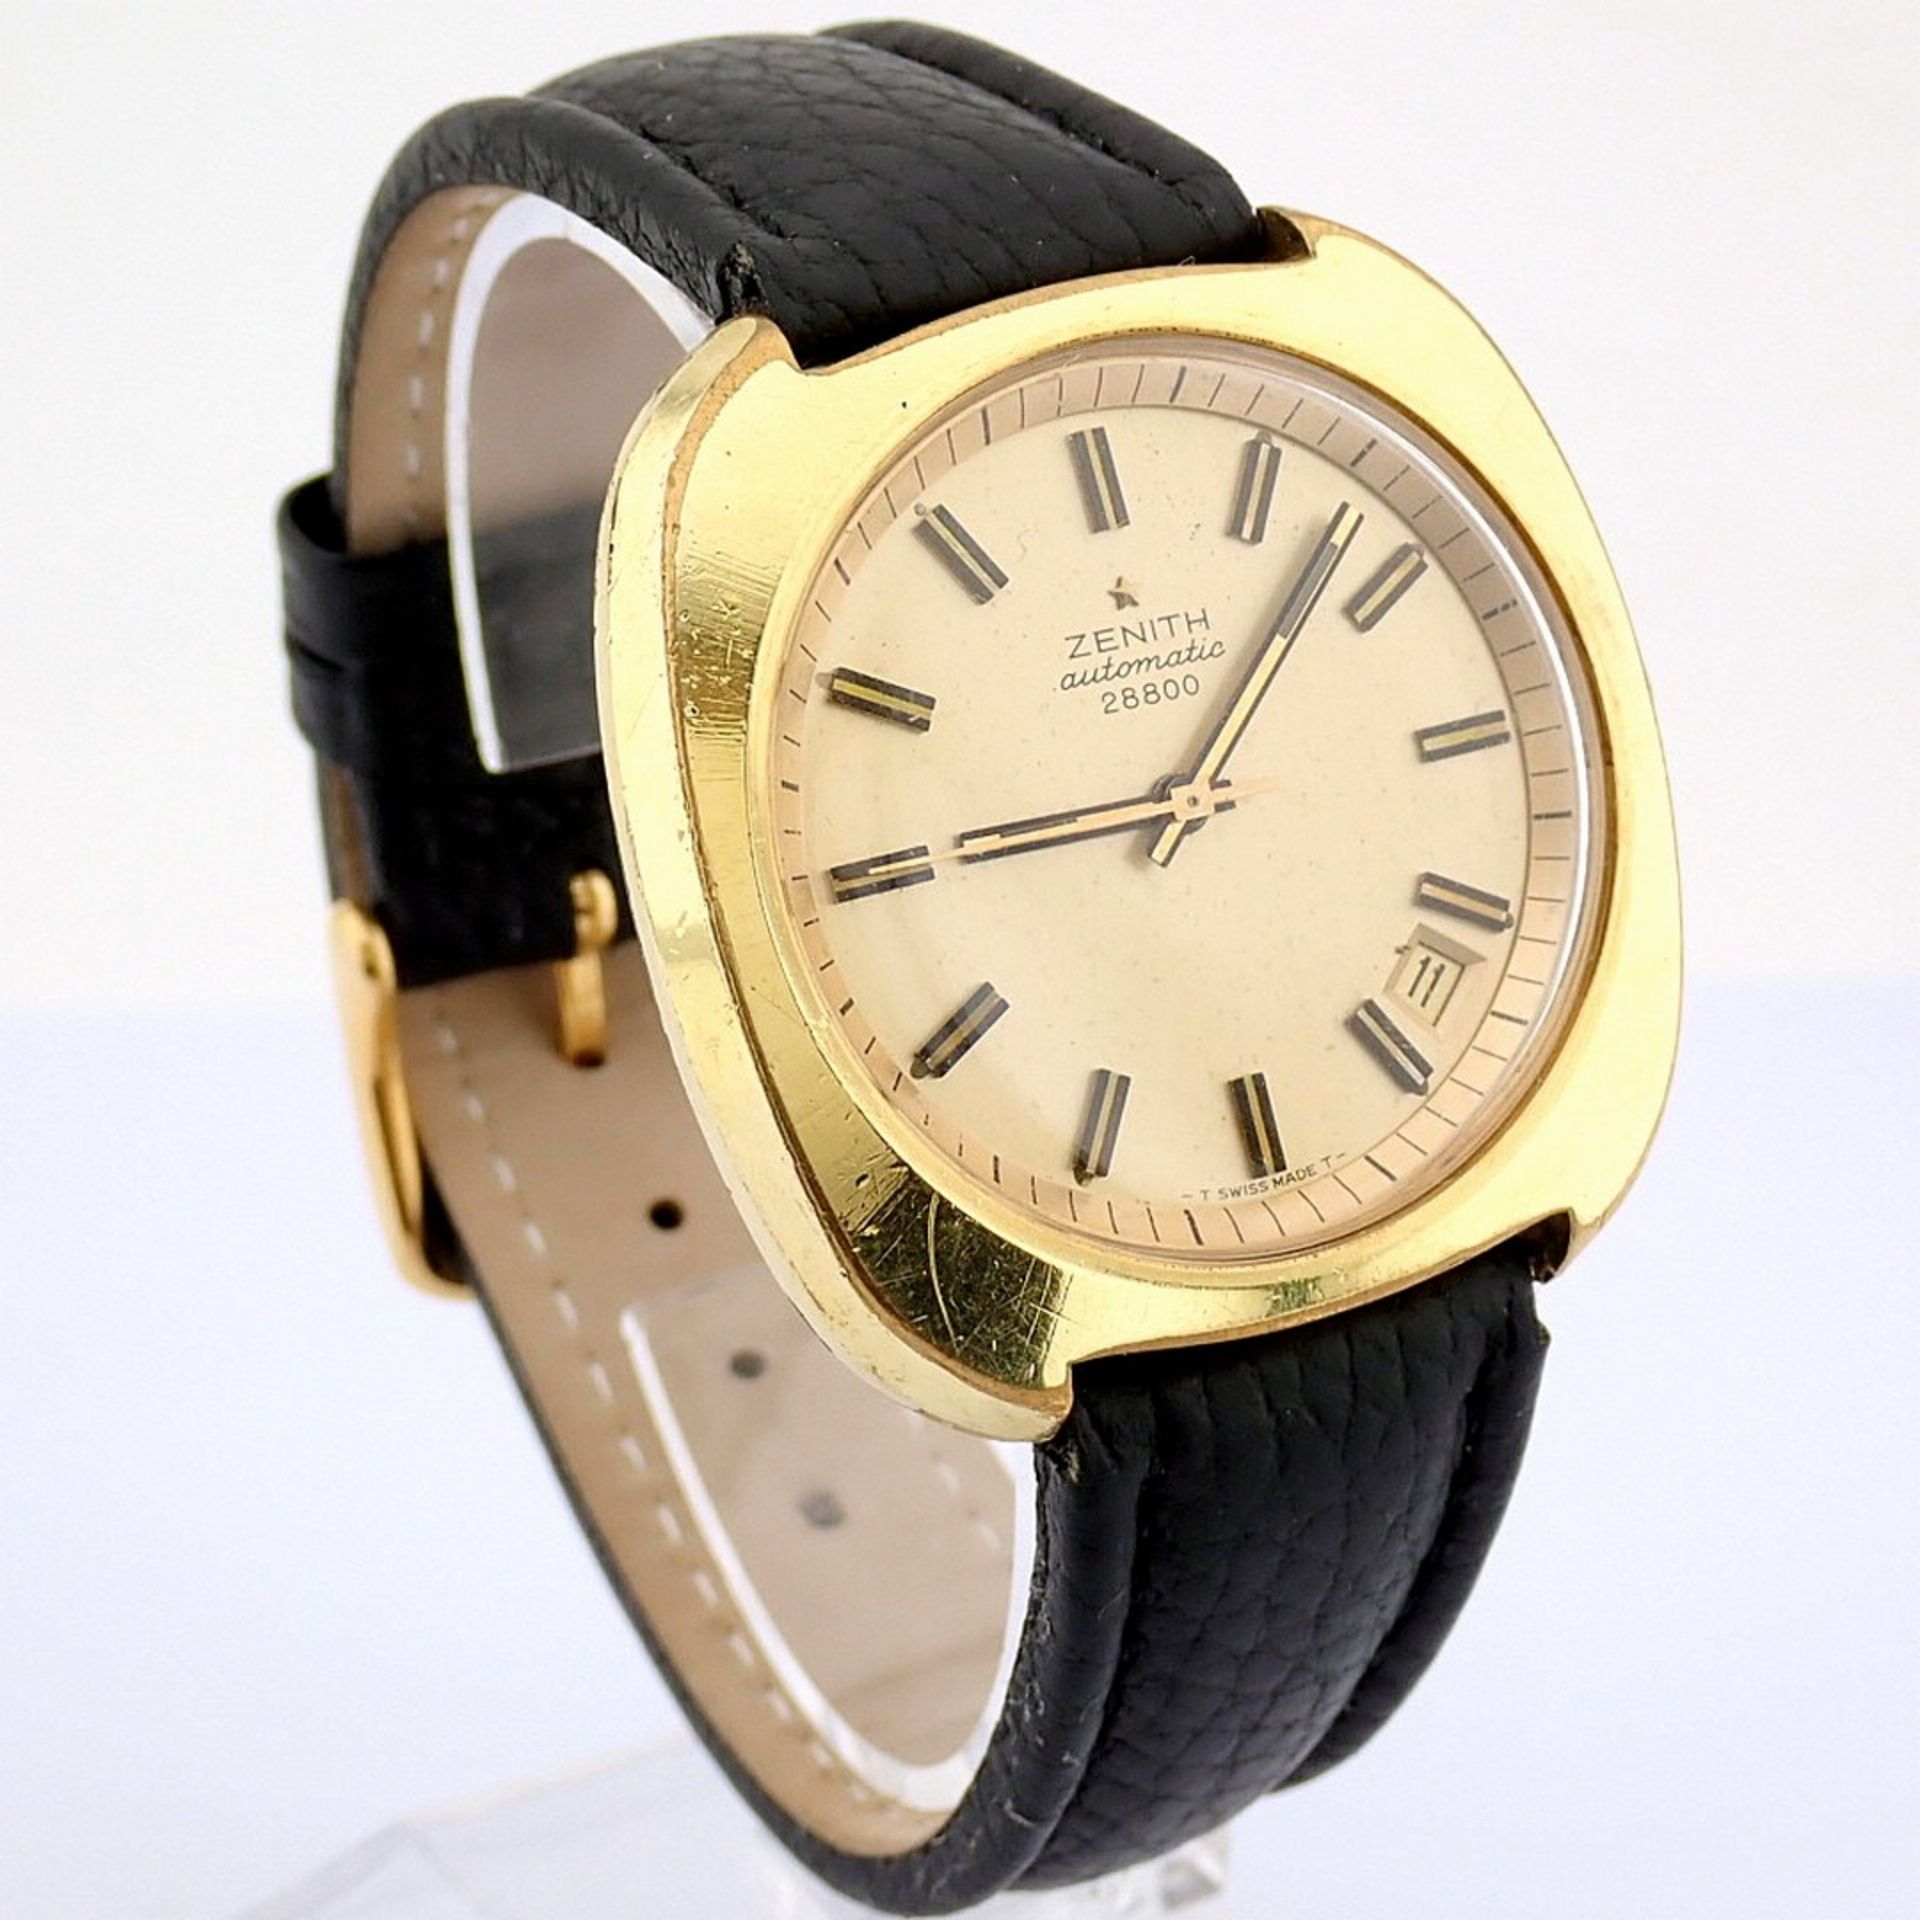 Zenith / 28800 Automatic - 40mm - Gentlmen's Steel Wrist Watch - Image 3 of 9